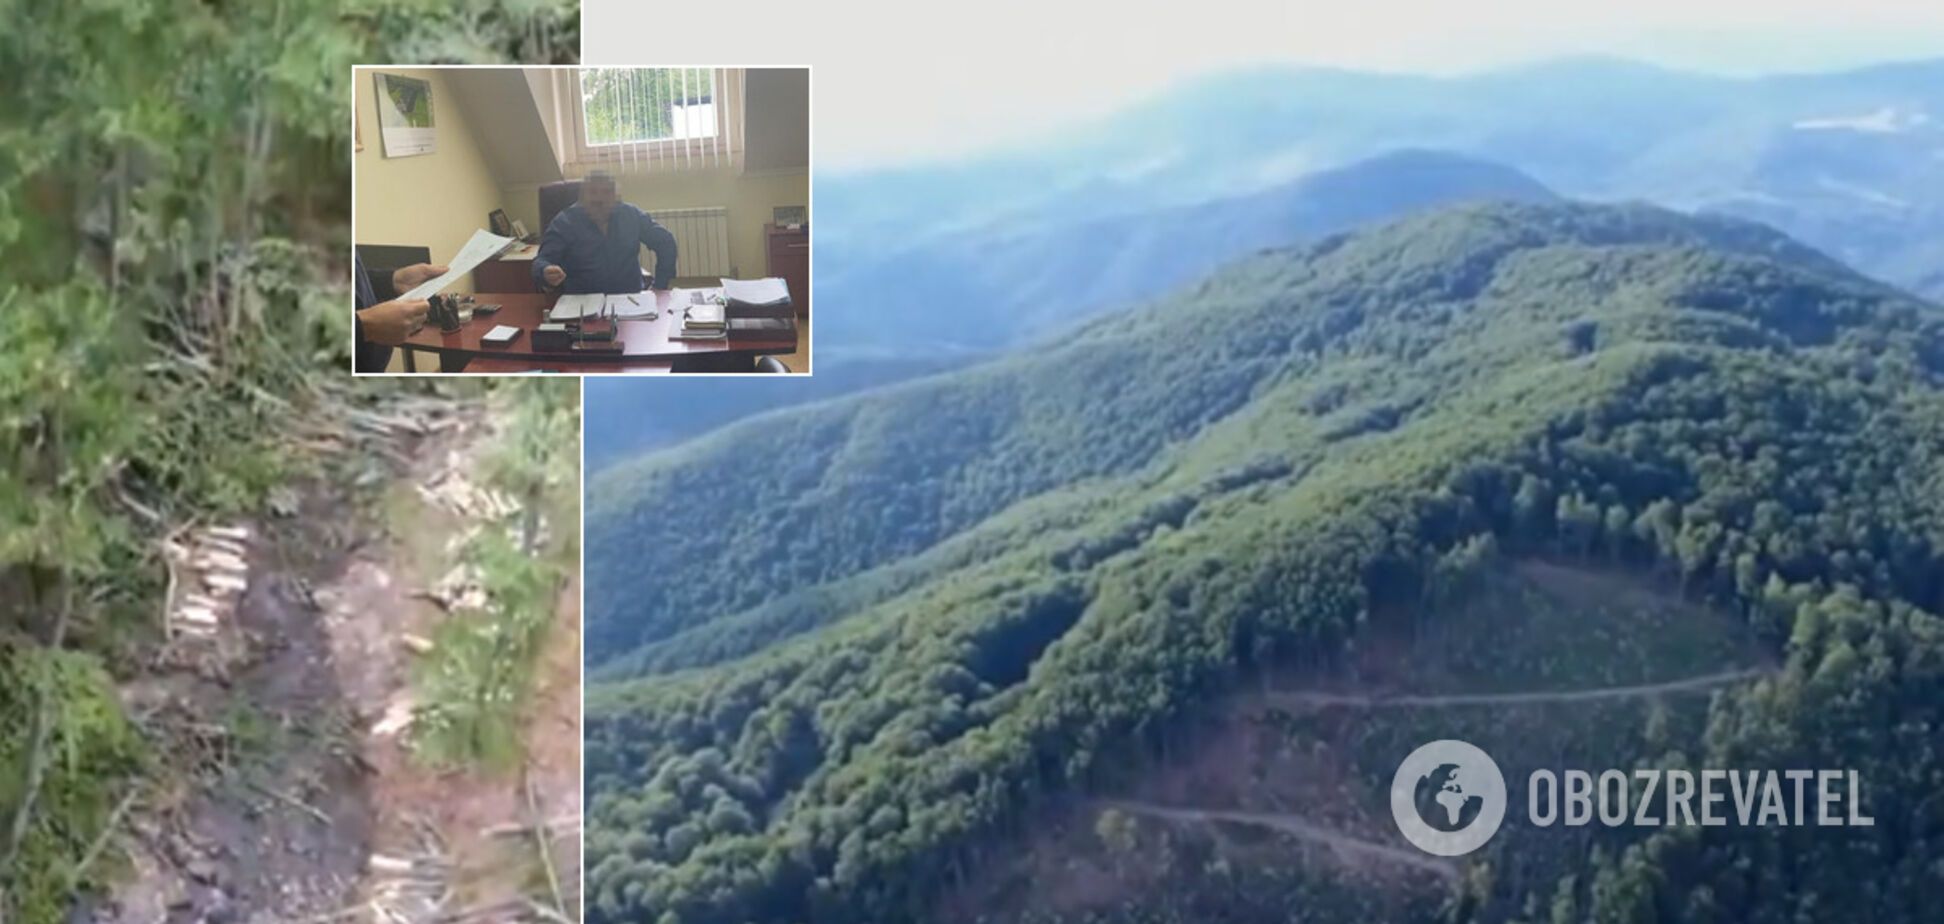 Топ-чиновники гослесничеств на Закарпатье устроили масштабную вырубку леса. Видео